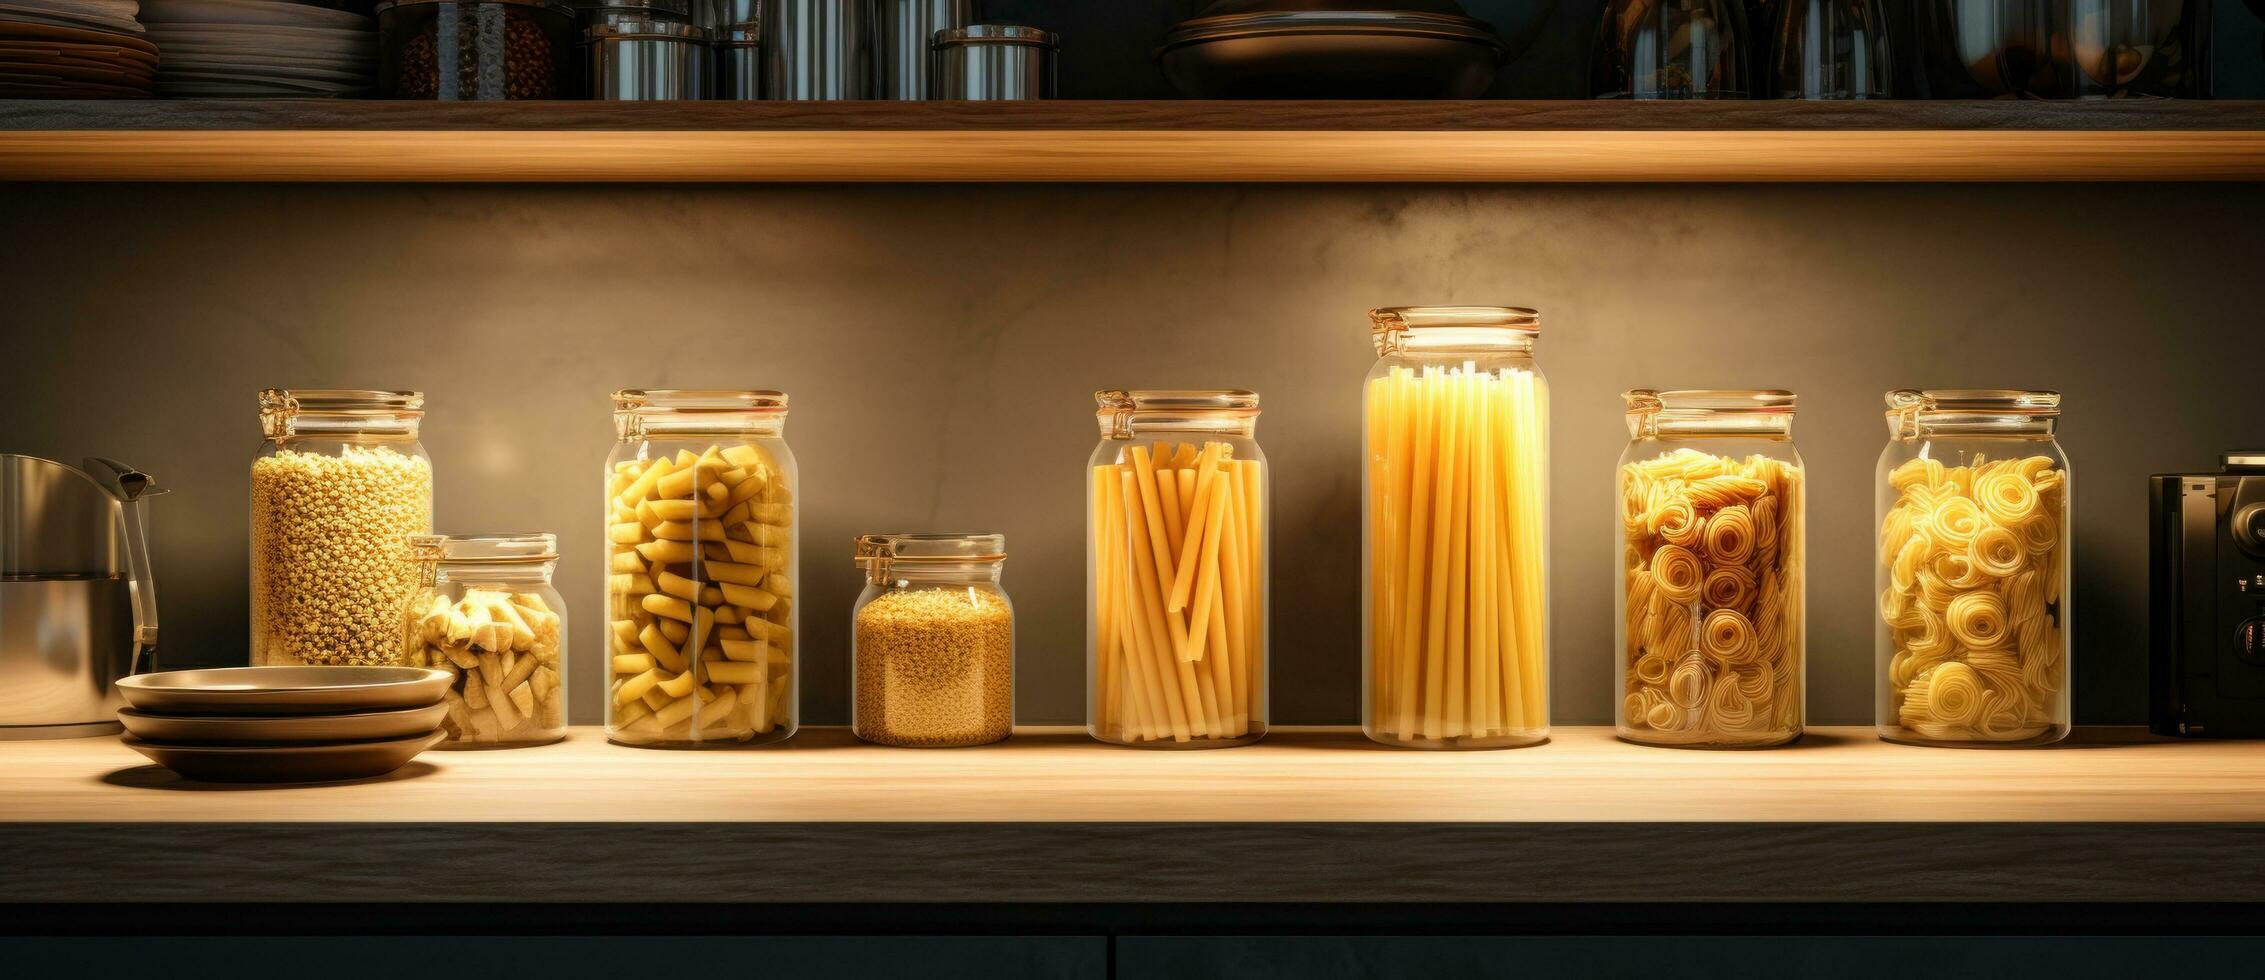 en samling av burkar är visad med olika pasta i dem foto